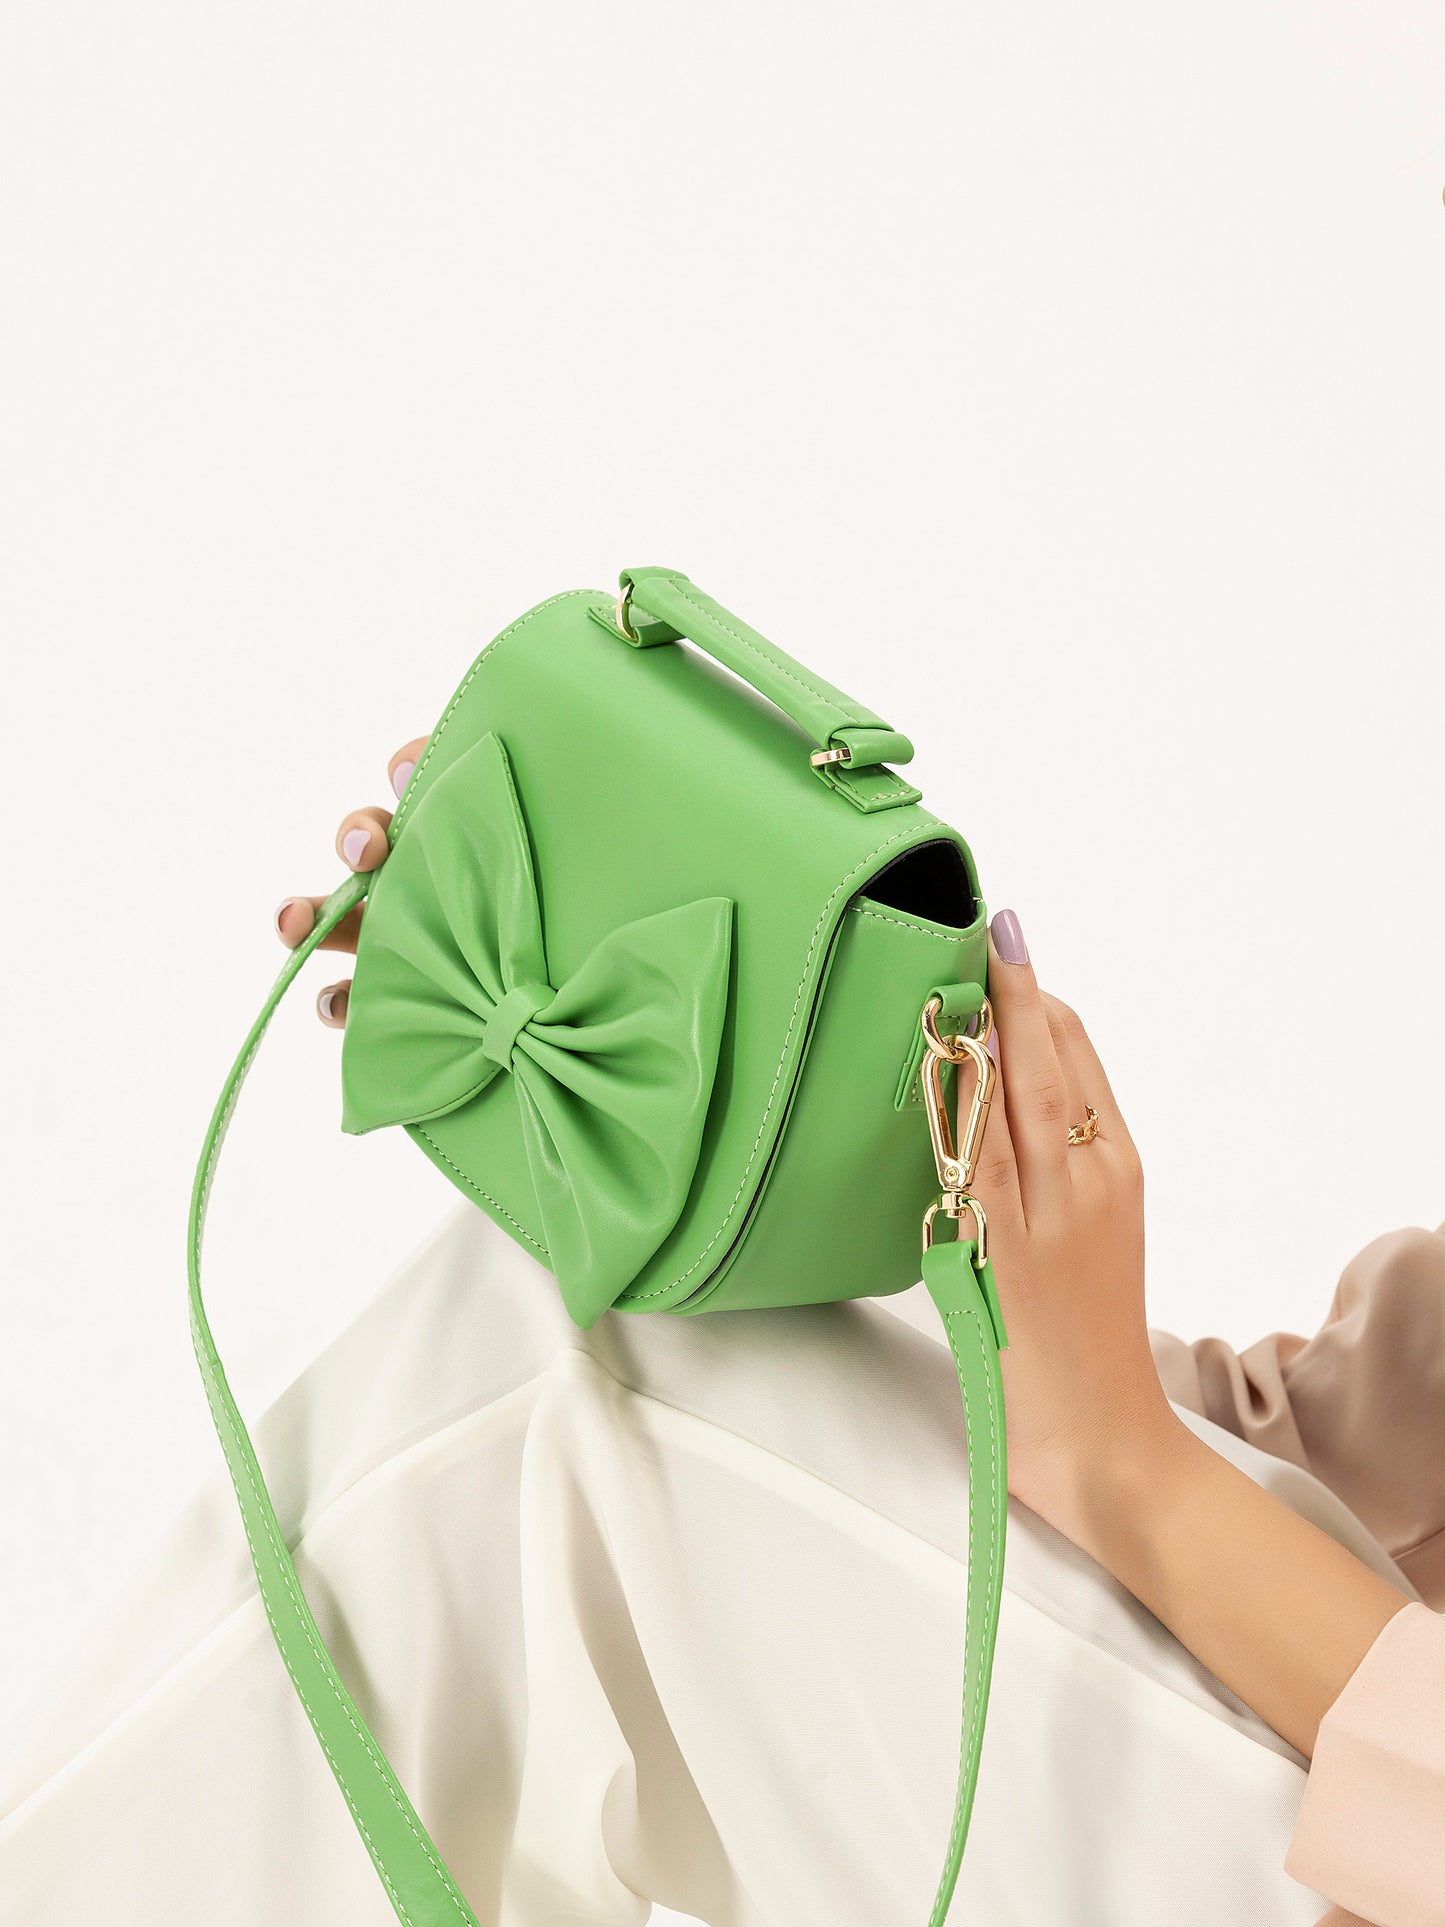 Bow-Tie Mini Handbag